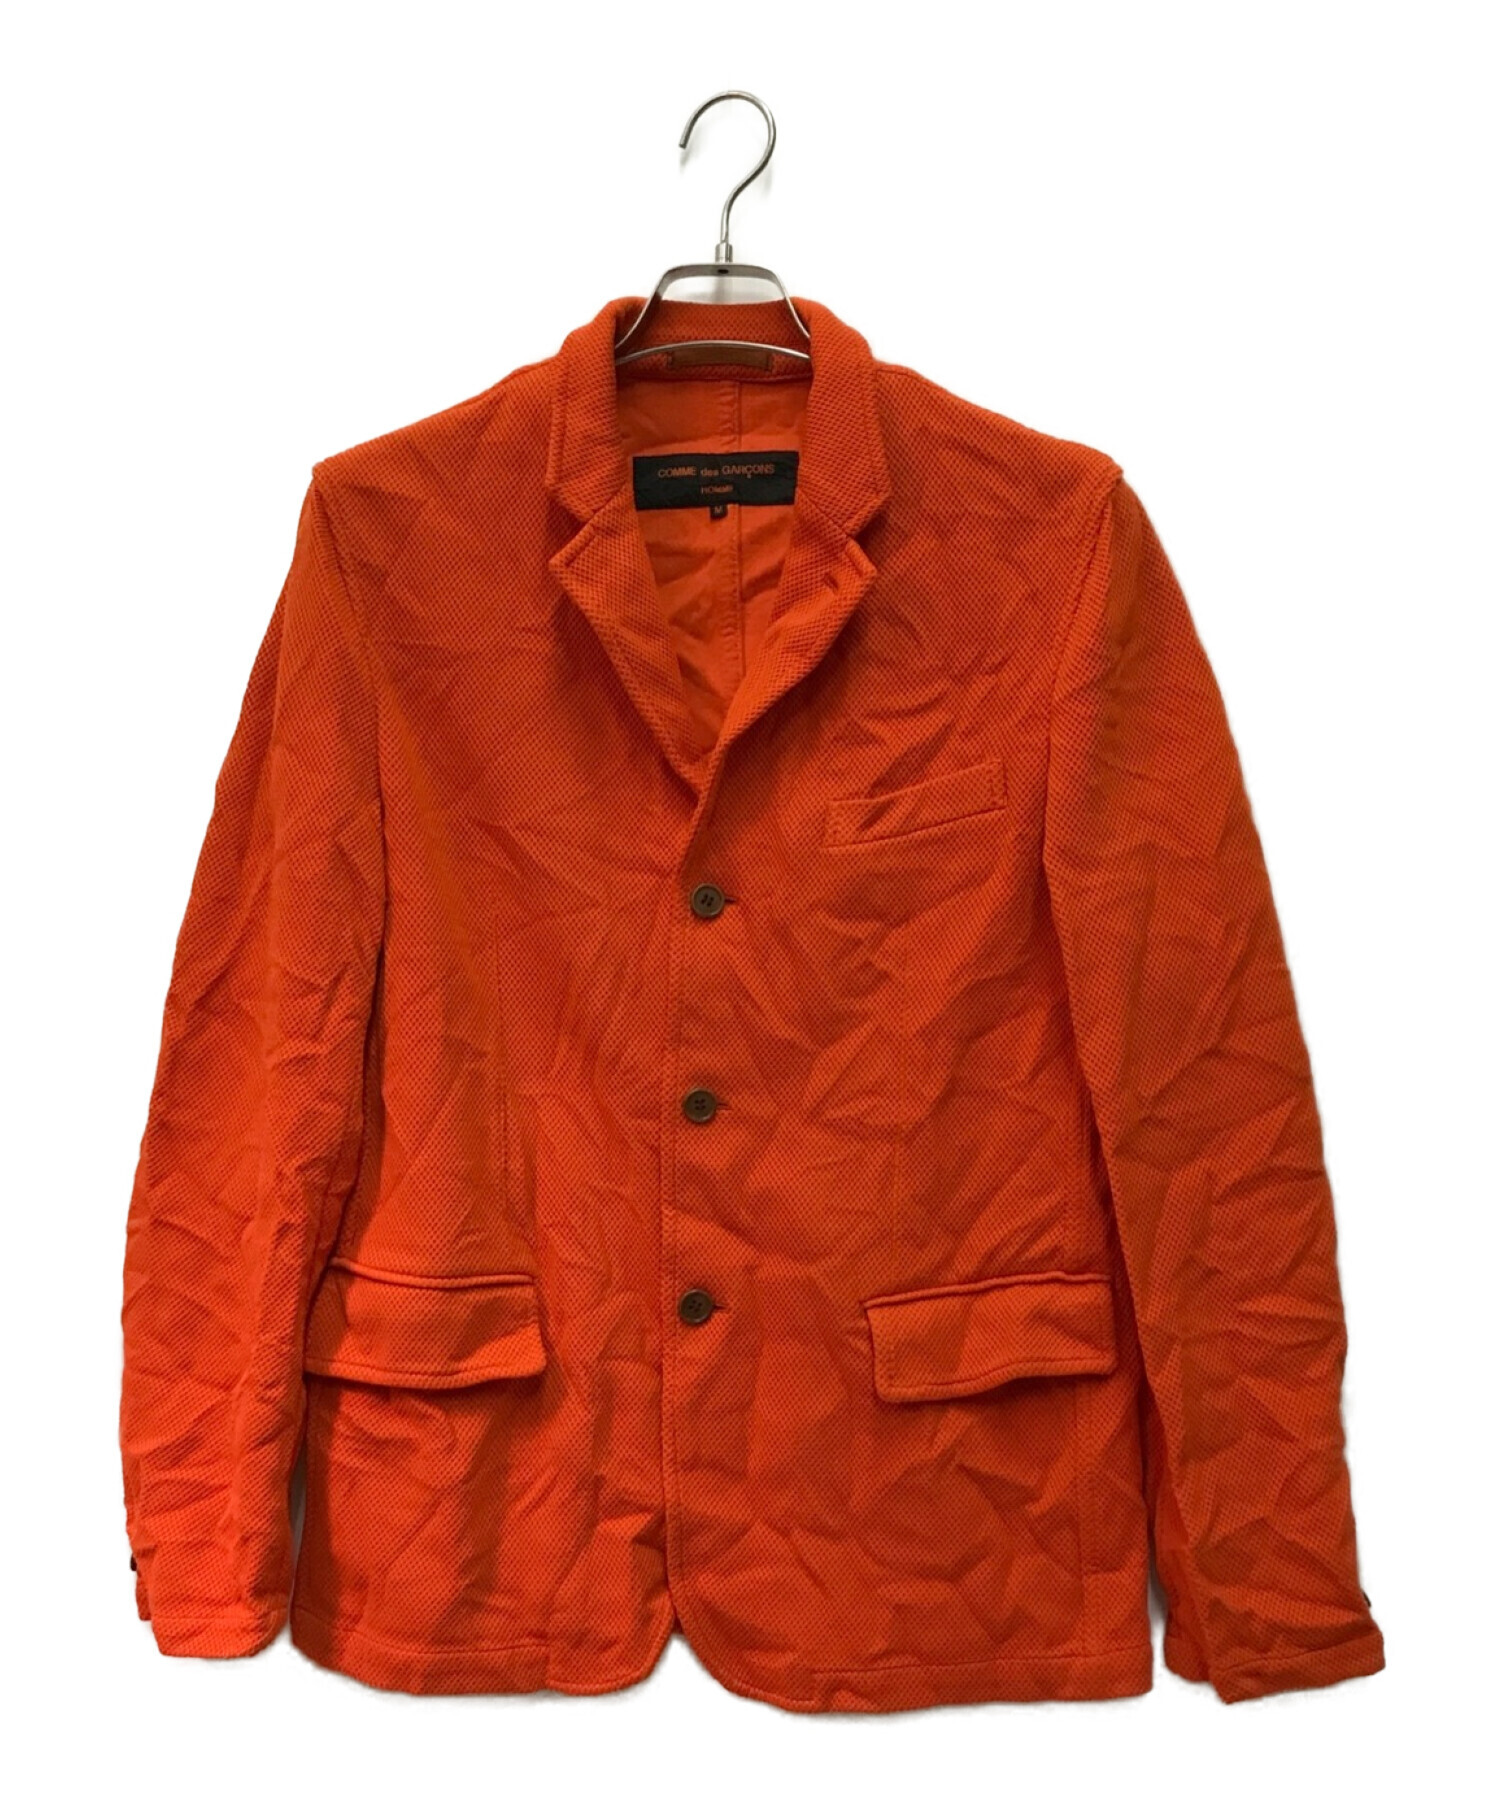 COMME des GARCONS HOMME (コムデギャルソン オム) ポリ縮絨テーラードジャケット オレンジ サイズ:M